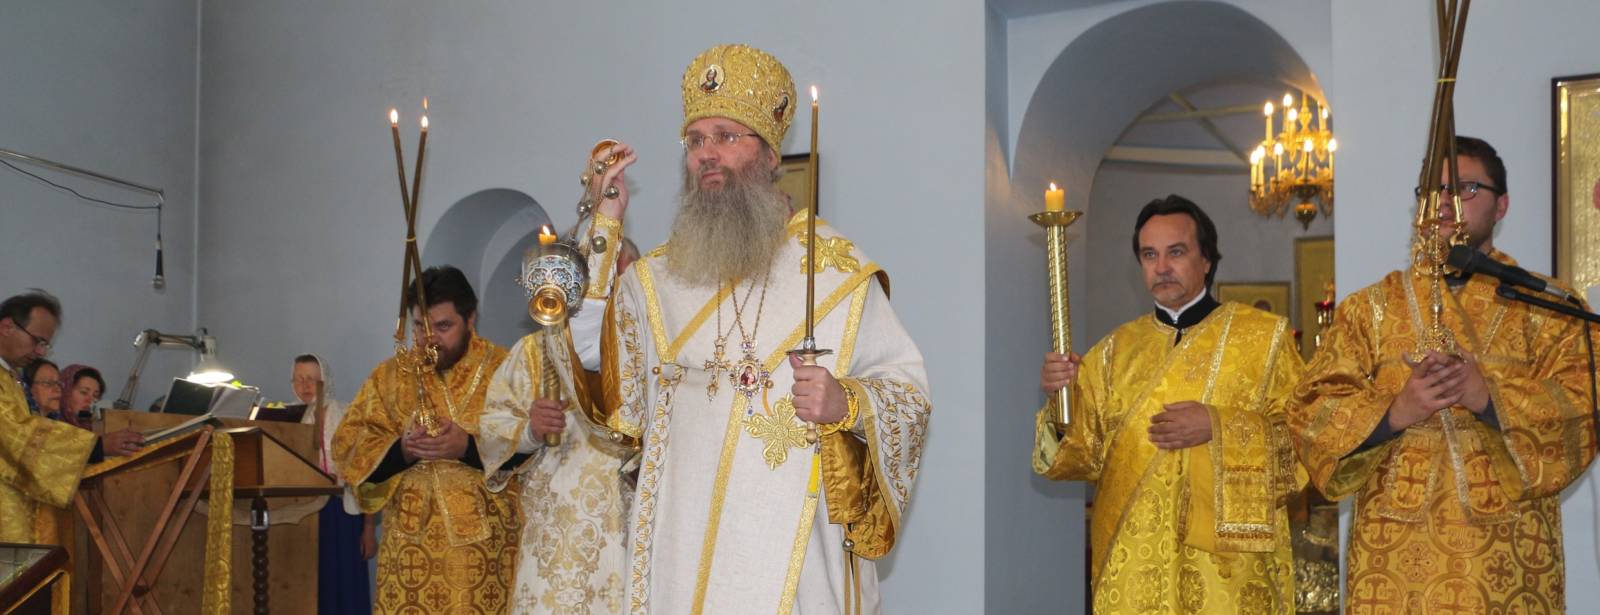 Служение епископа Елисея в канун дня памяти Собора Всех святых в земле Российской просиявших.